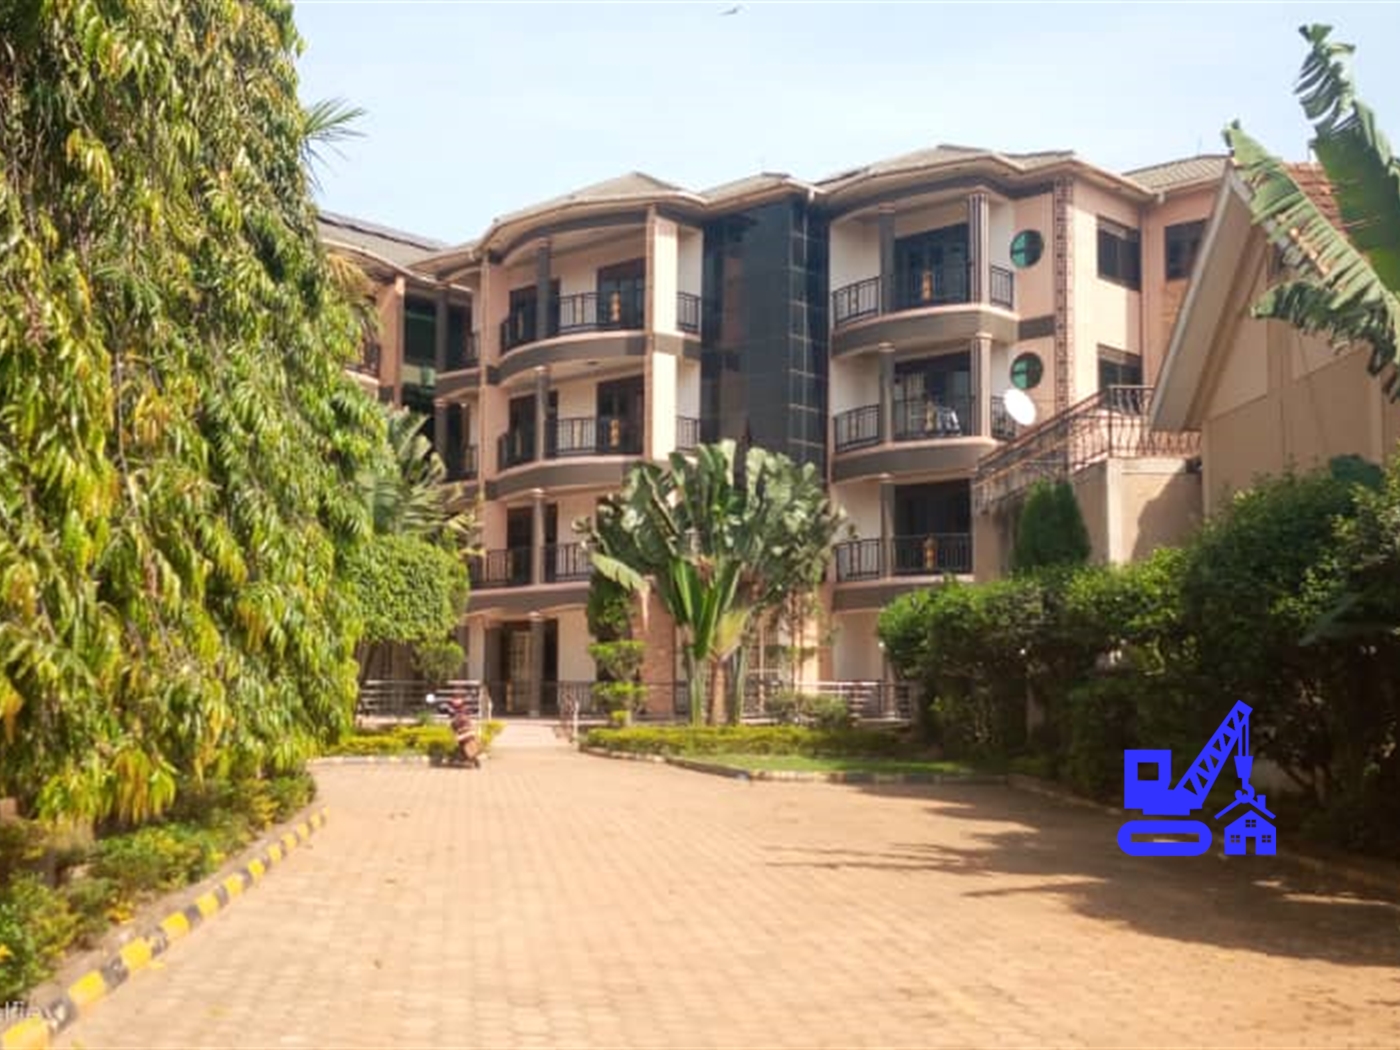 Apartment block for sale in Rubaga Kampala